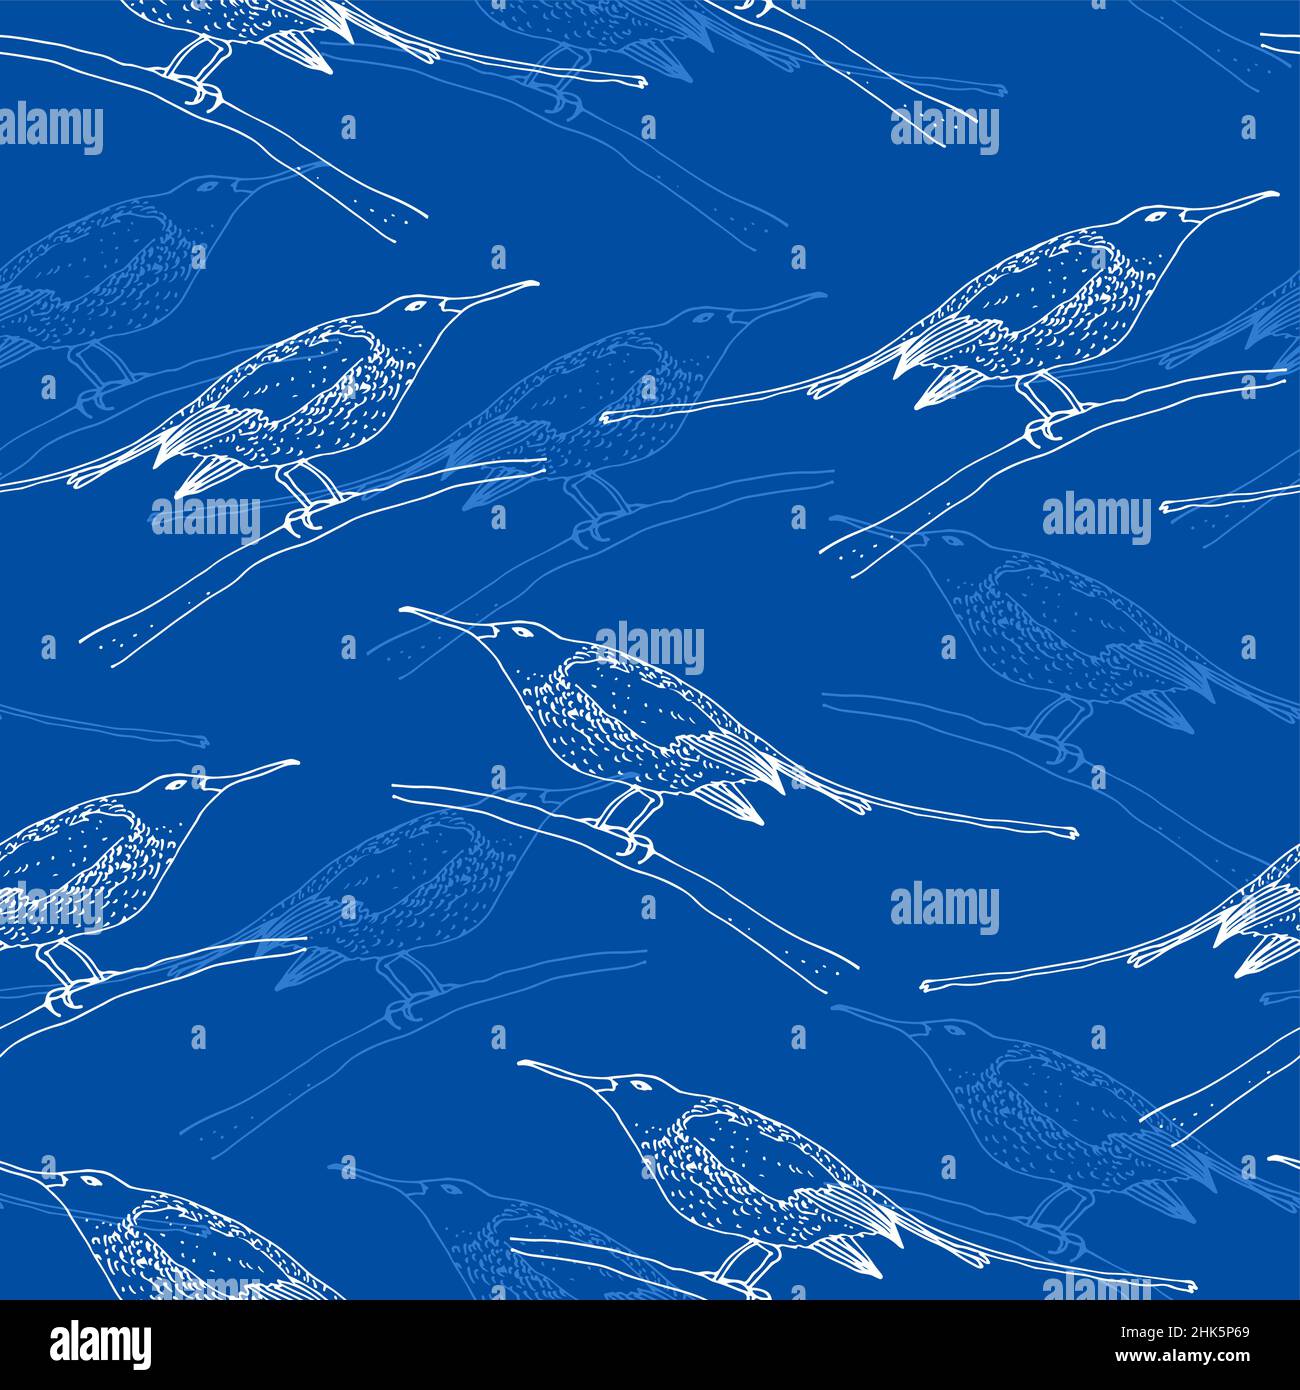 Sunbird vector seamless pattern, bird family Nectariniidae of passerine birds, isolated on blue background Stock Vector